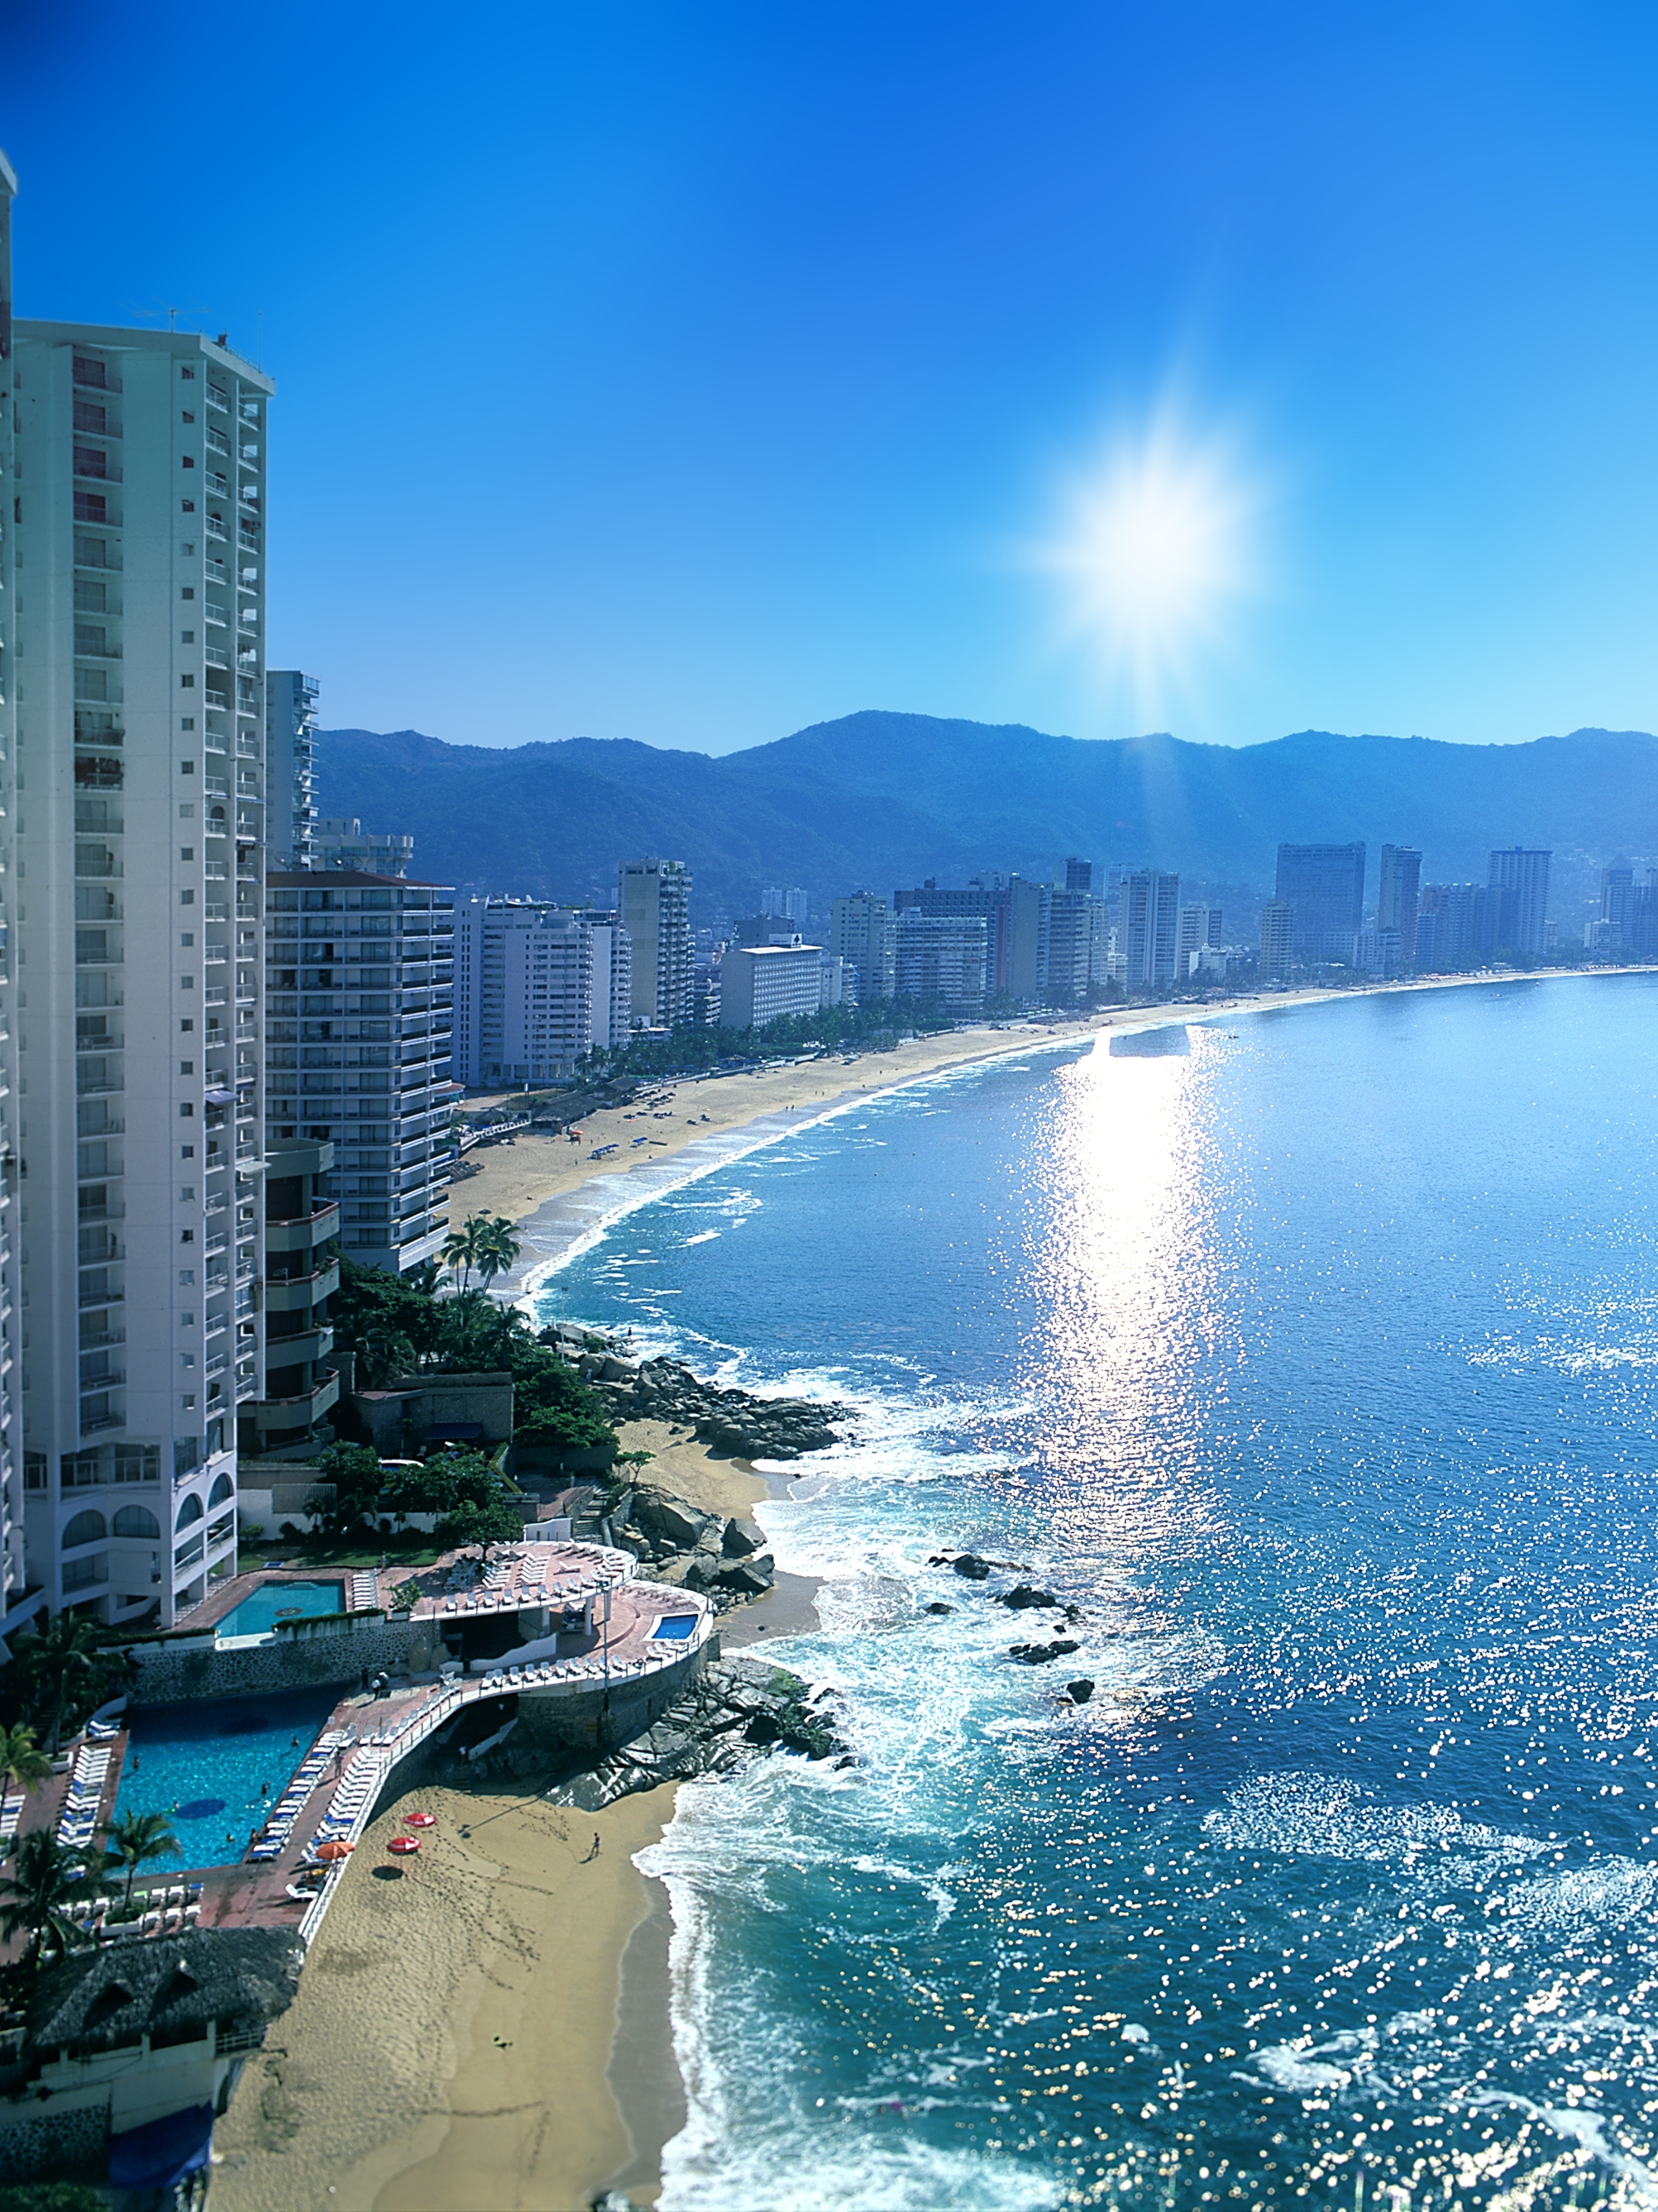 Acapulco